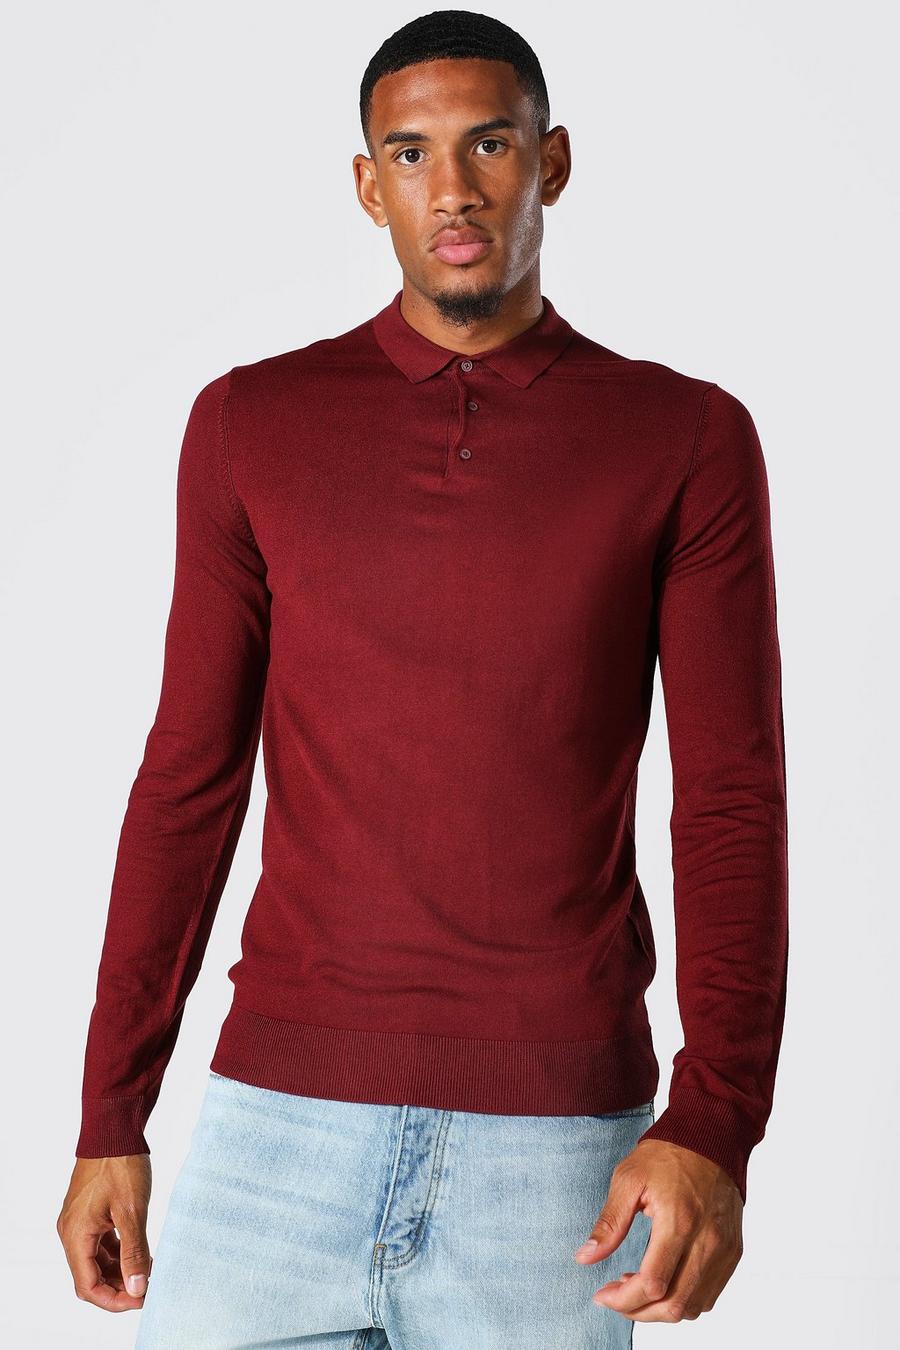 Burgundy red חולצת פולו סרוגה מבד ממוחזר עם שרוולים ארוכים, לגברים גבוהים